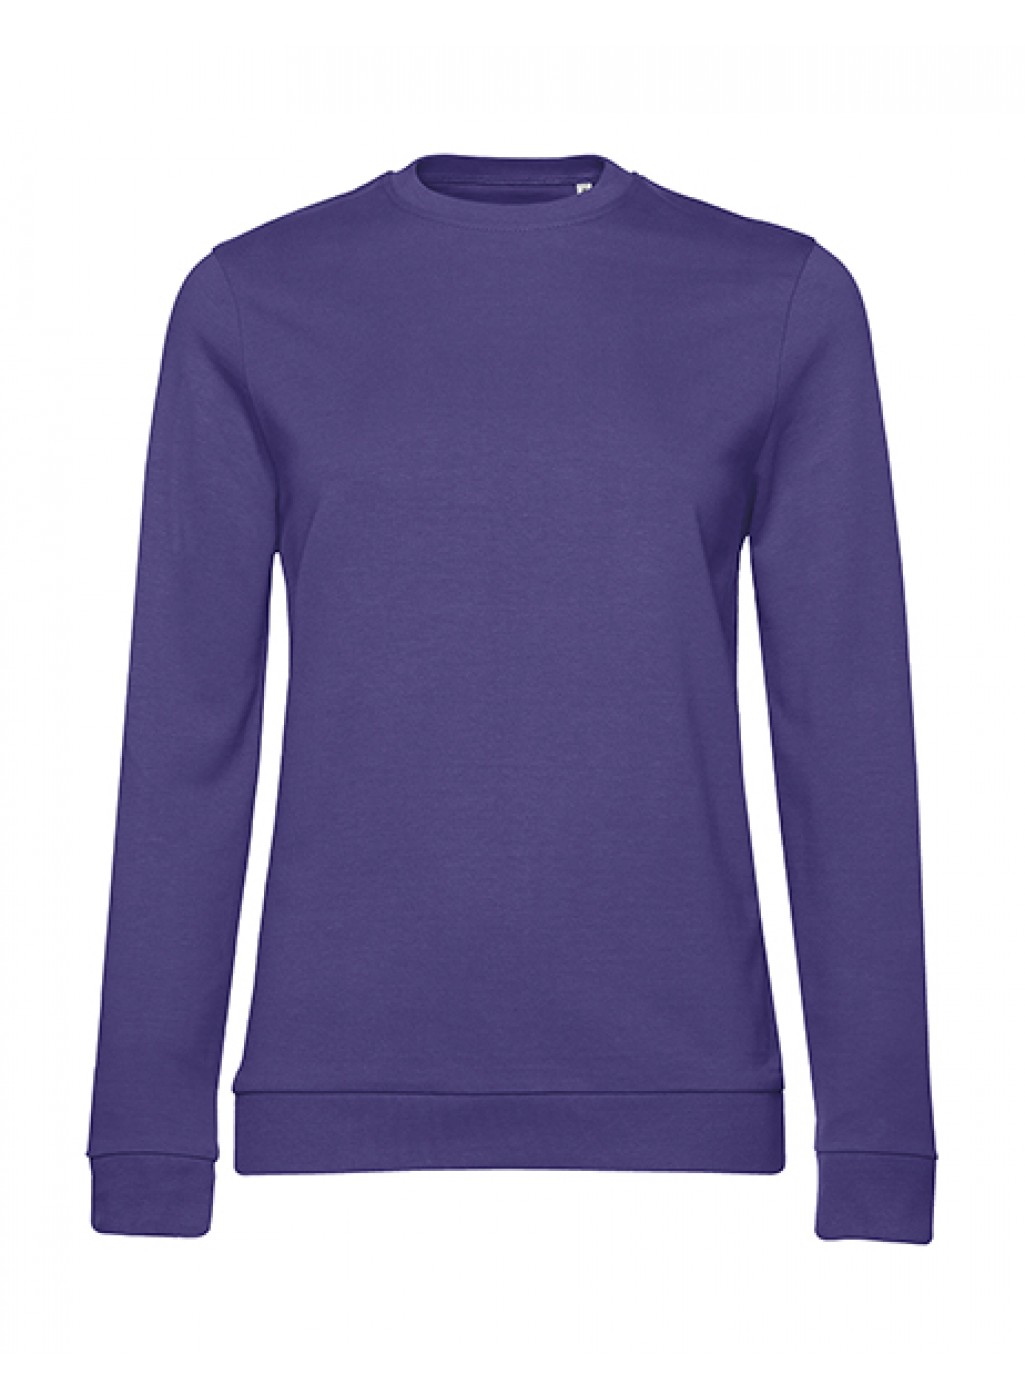 Populair Vooroordeel Elasticiteit Sweater dames (geschikt voor digitale druk van uw ontwerp viia de designer  tool)